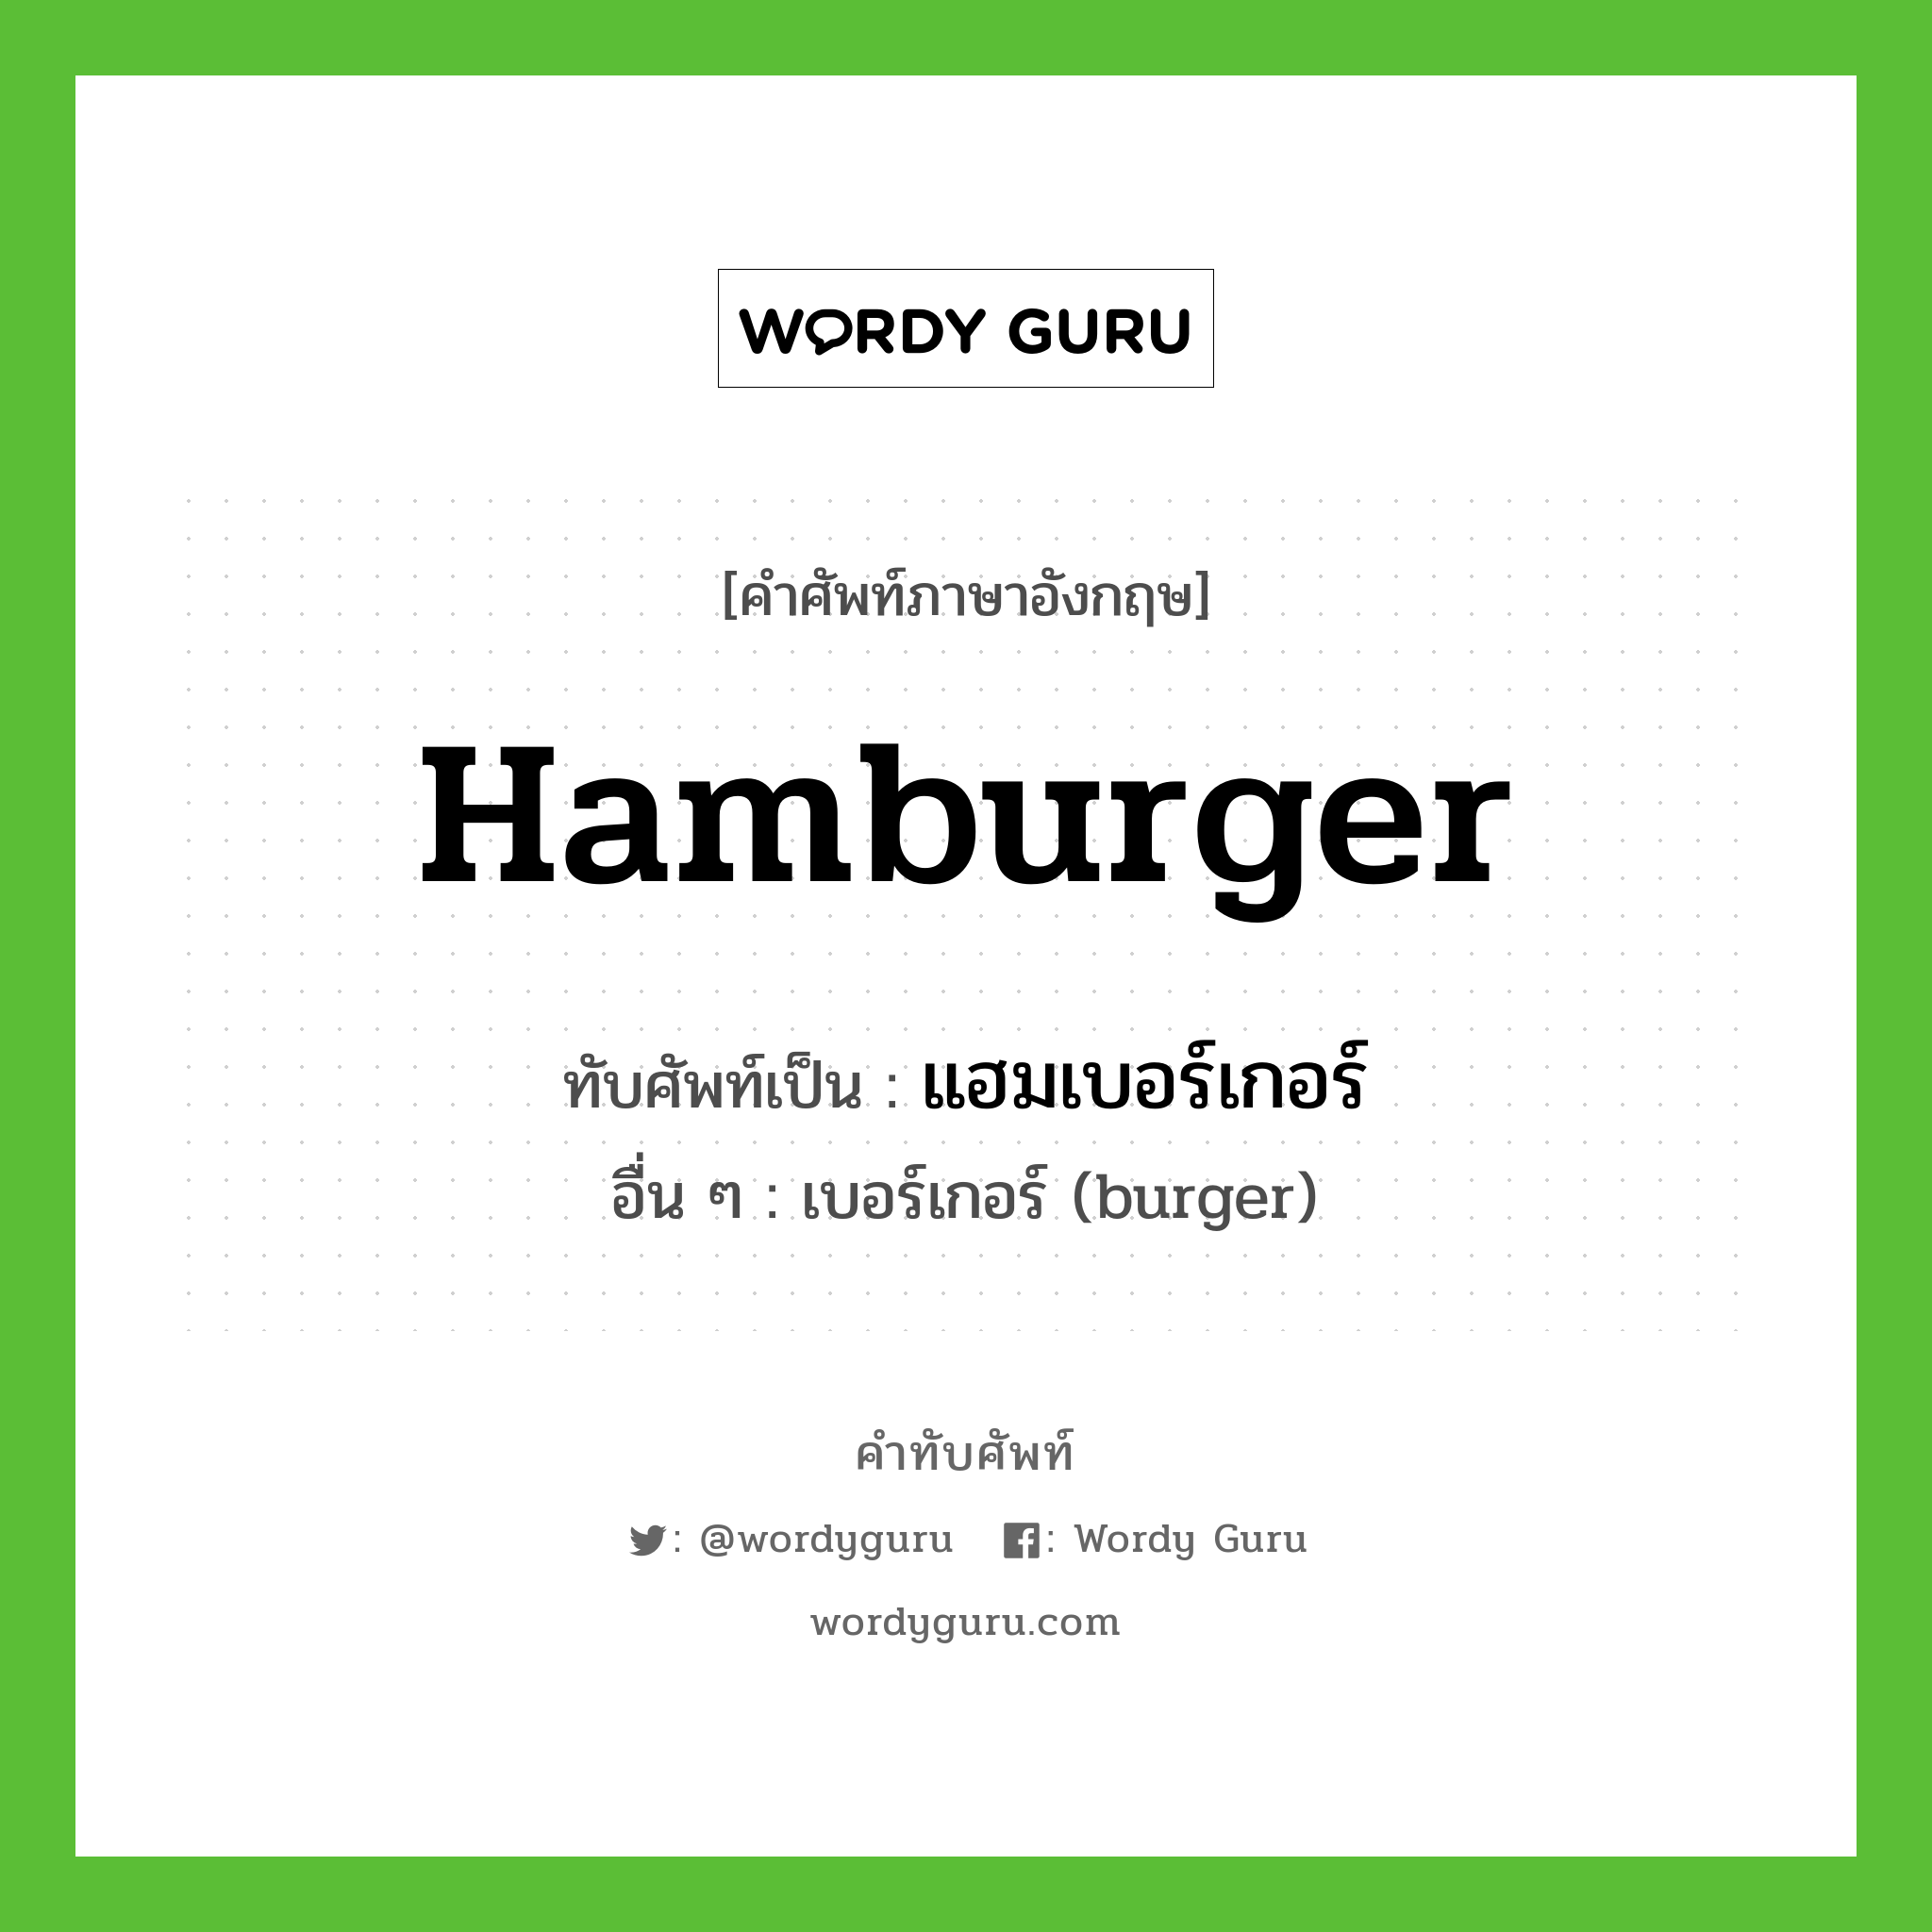 hamburger เขียนเป็นคำไทยว่าอะไร?, คำศัพท์ภาษาอังกฤษ hamburger ทับศัพท์เป็น แฮมเบอร์เกอร์ อื่น ๆ เบอร์เกอร์ (burger)